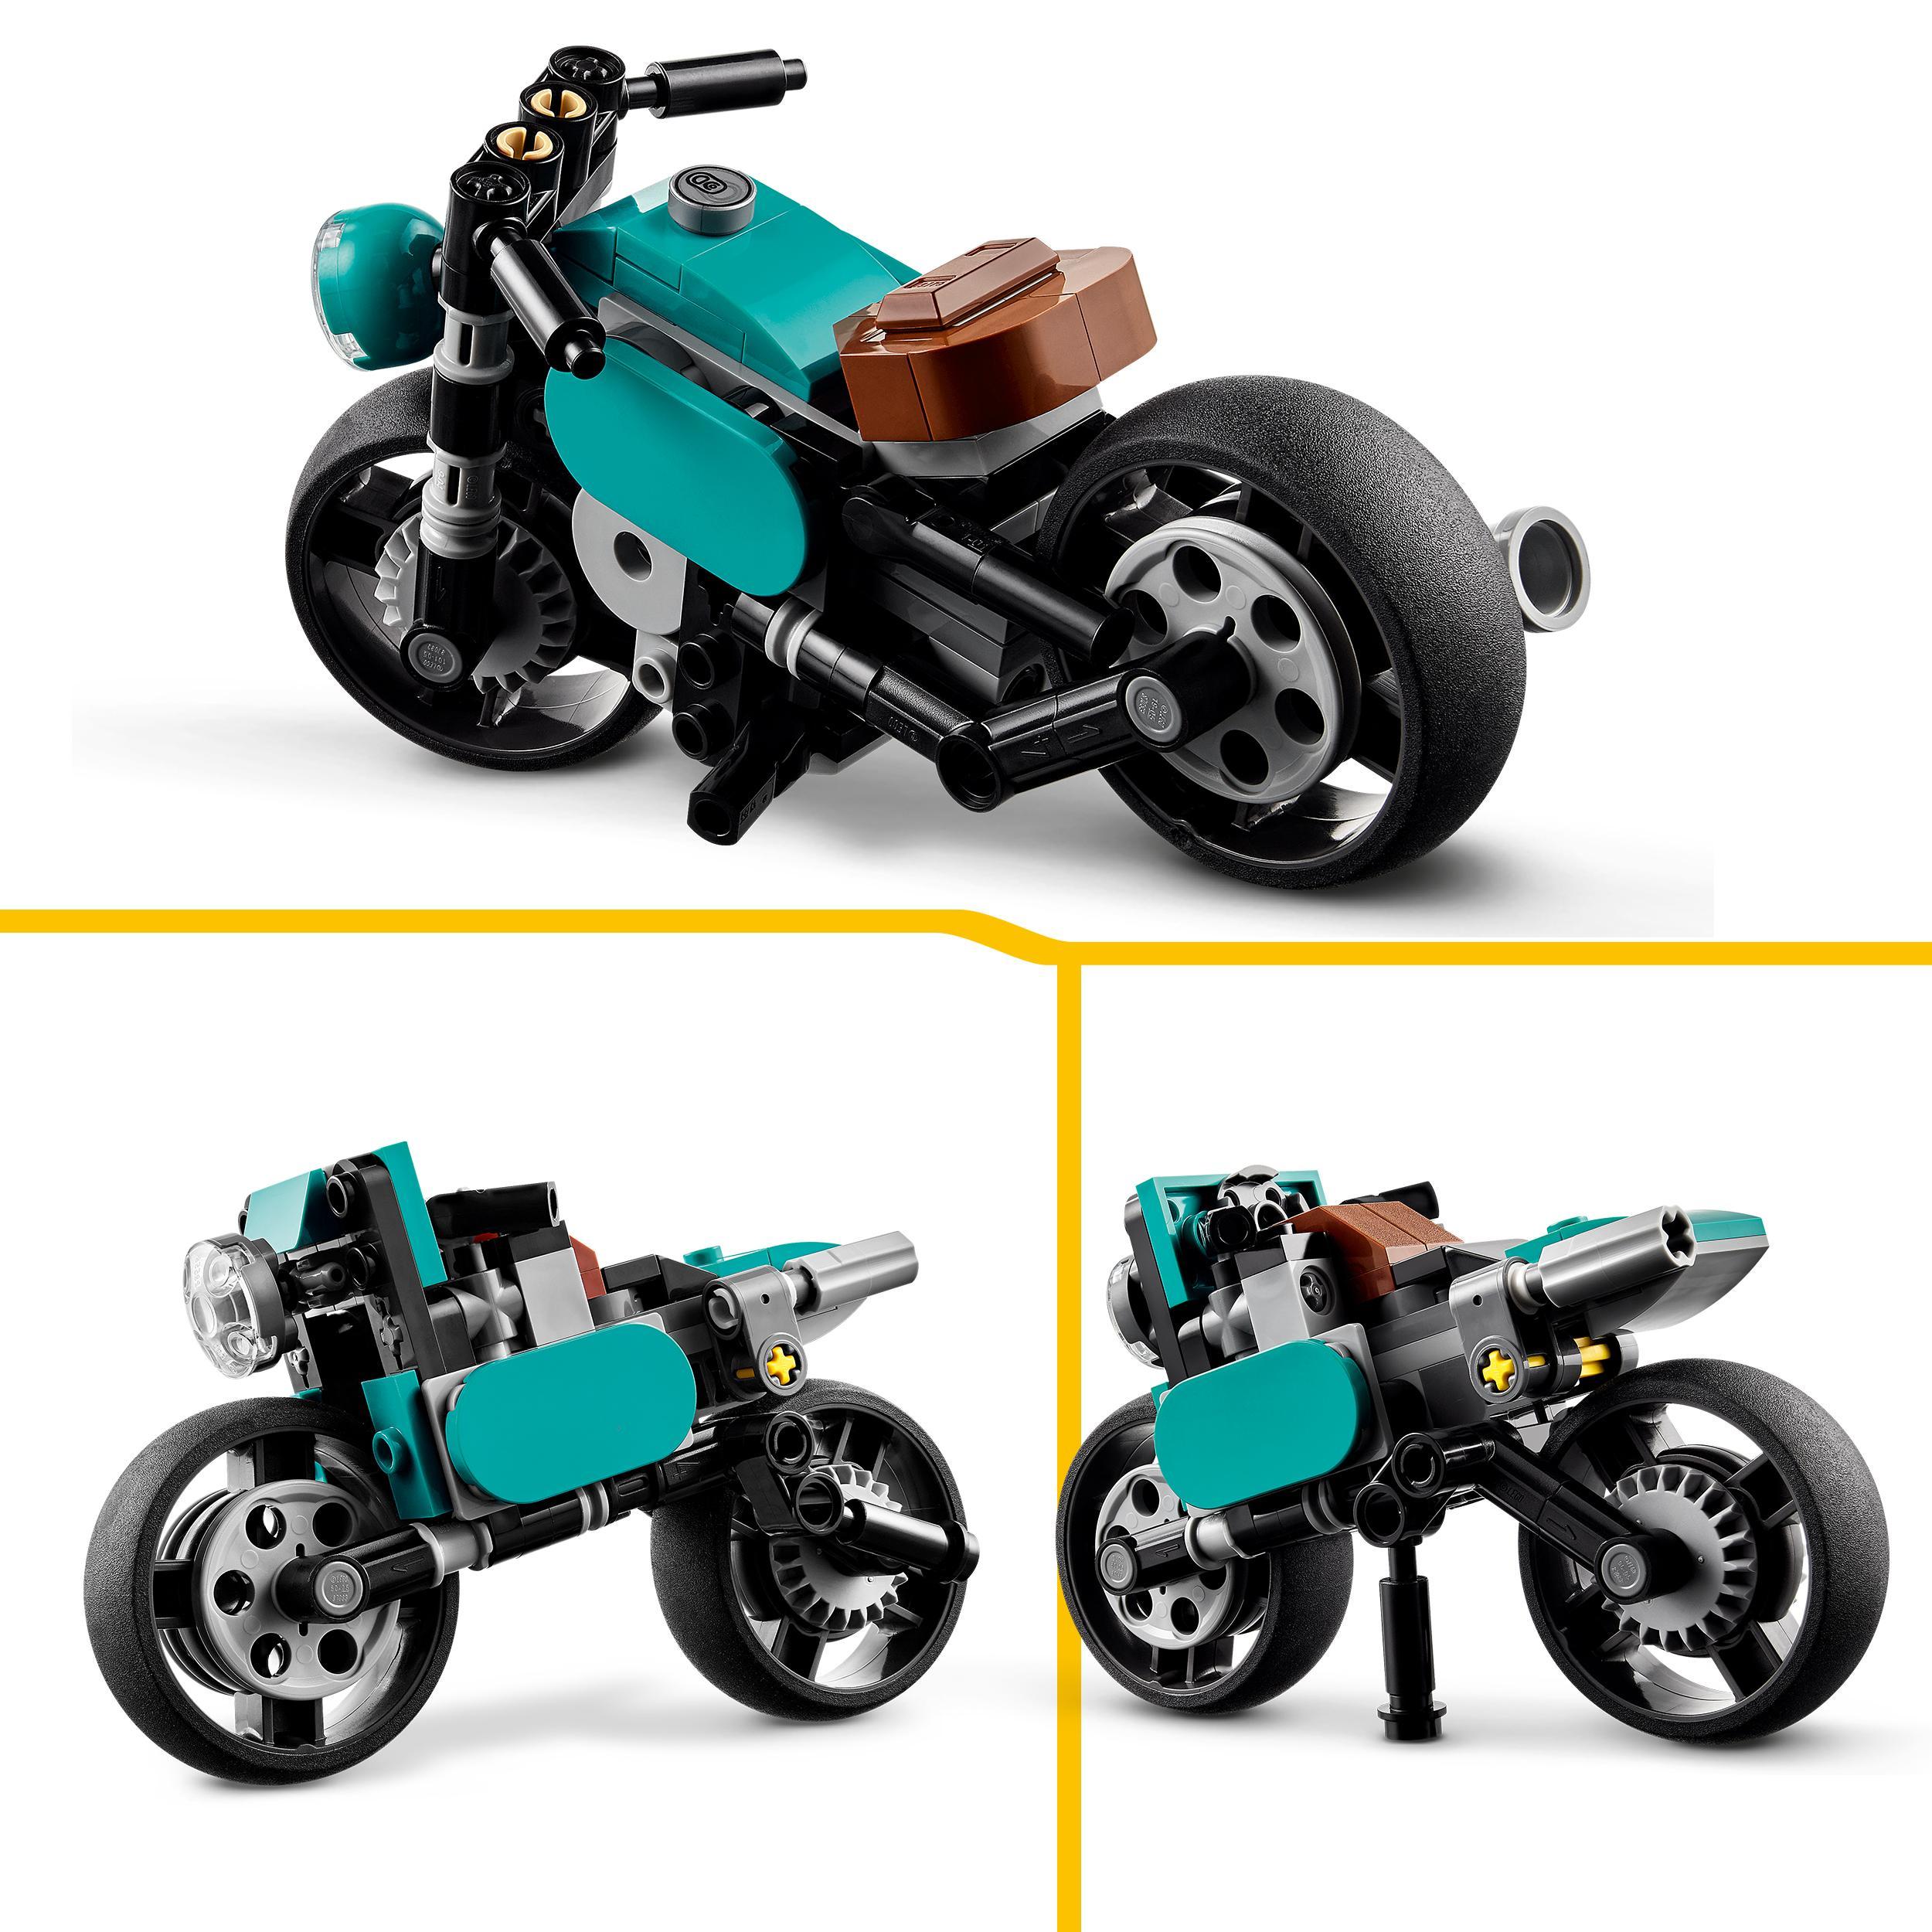 Lego creator 31135 motocicletta vintage, set 3 in 1 con moto